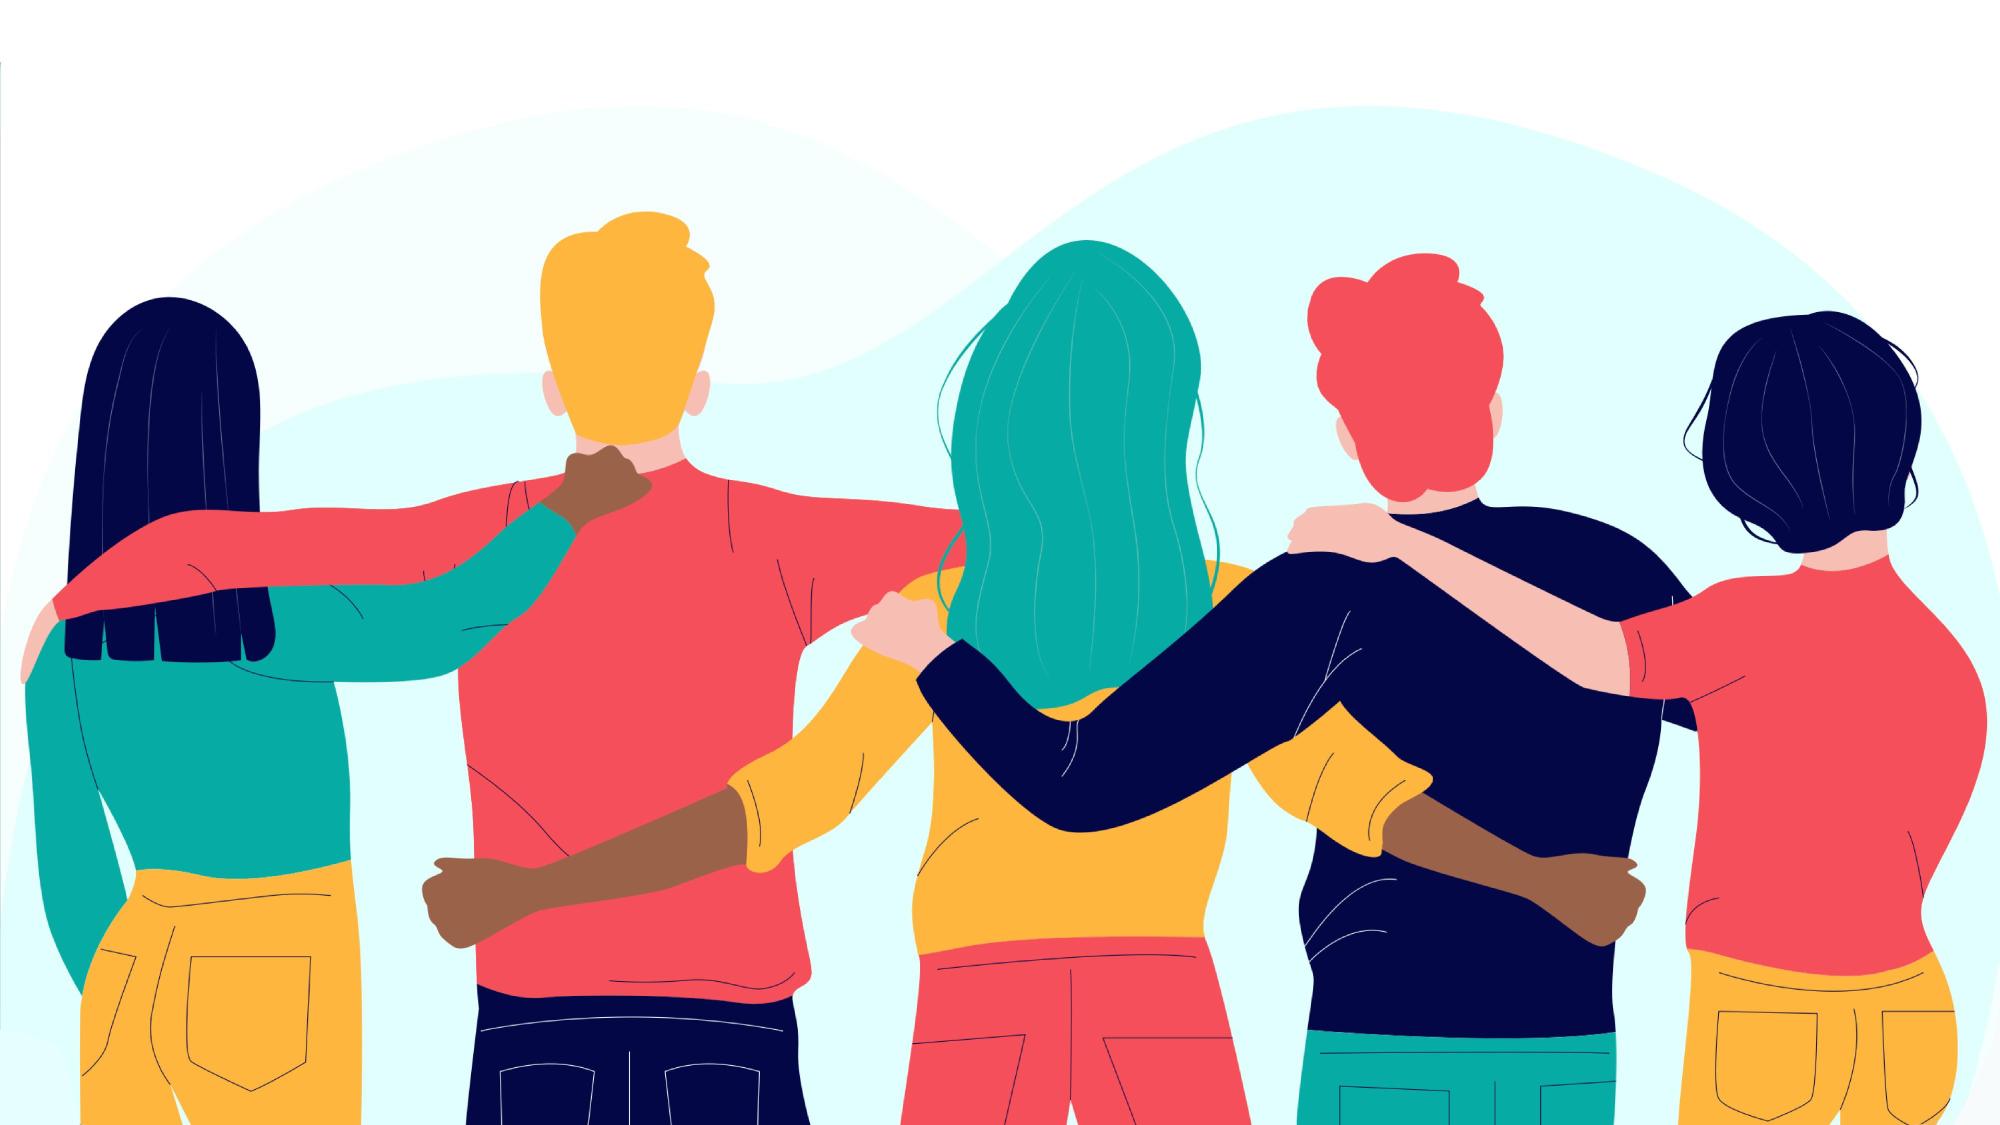 Grafik mit einer Reihe von Personen, die sich gegenseitig die Arme über die Schultern legen.